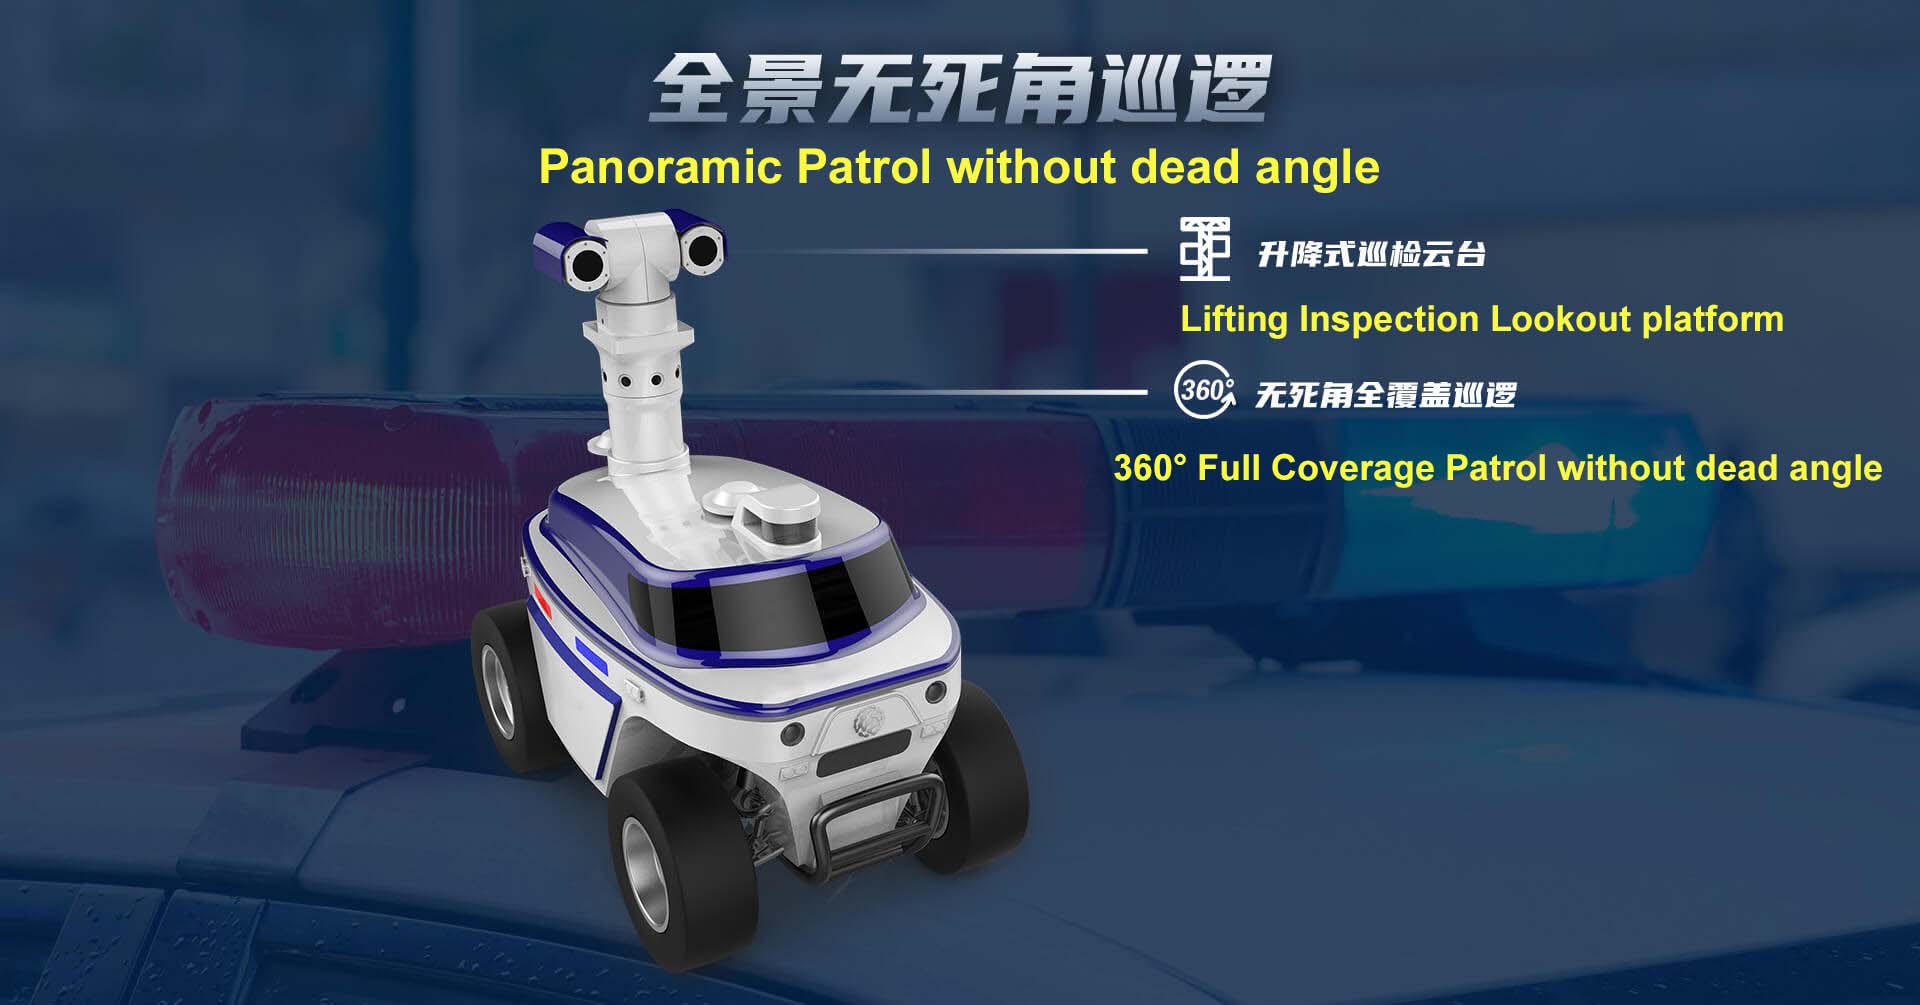 robot de patrulla de seguridad